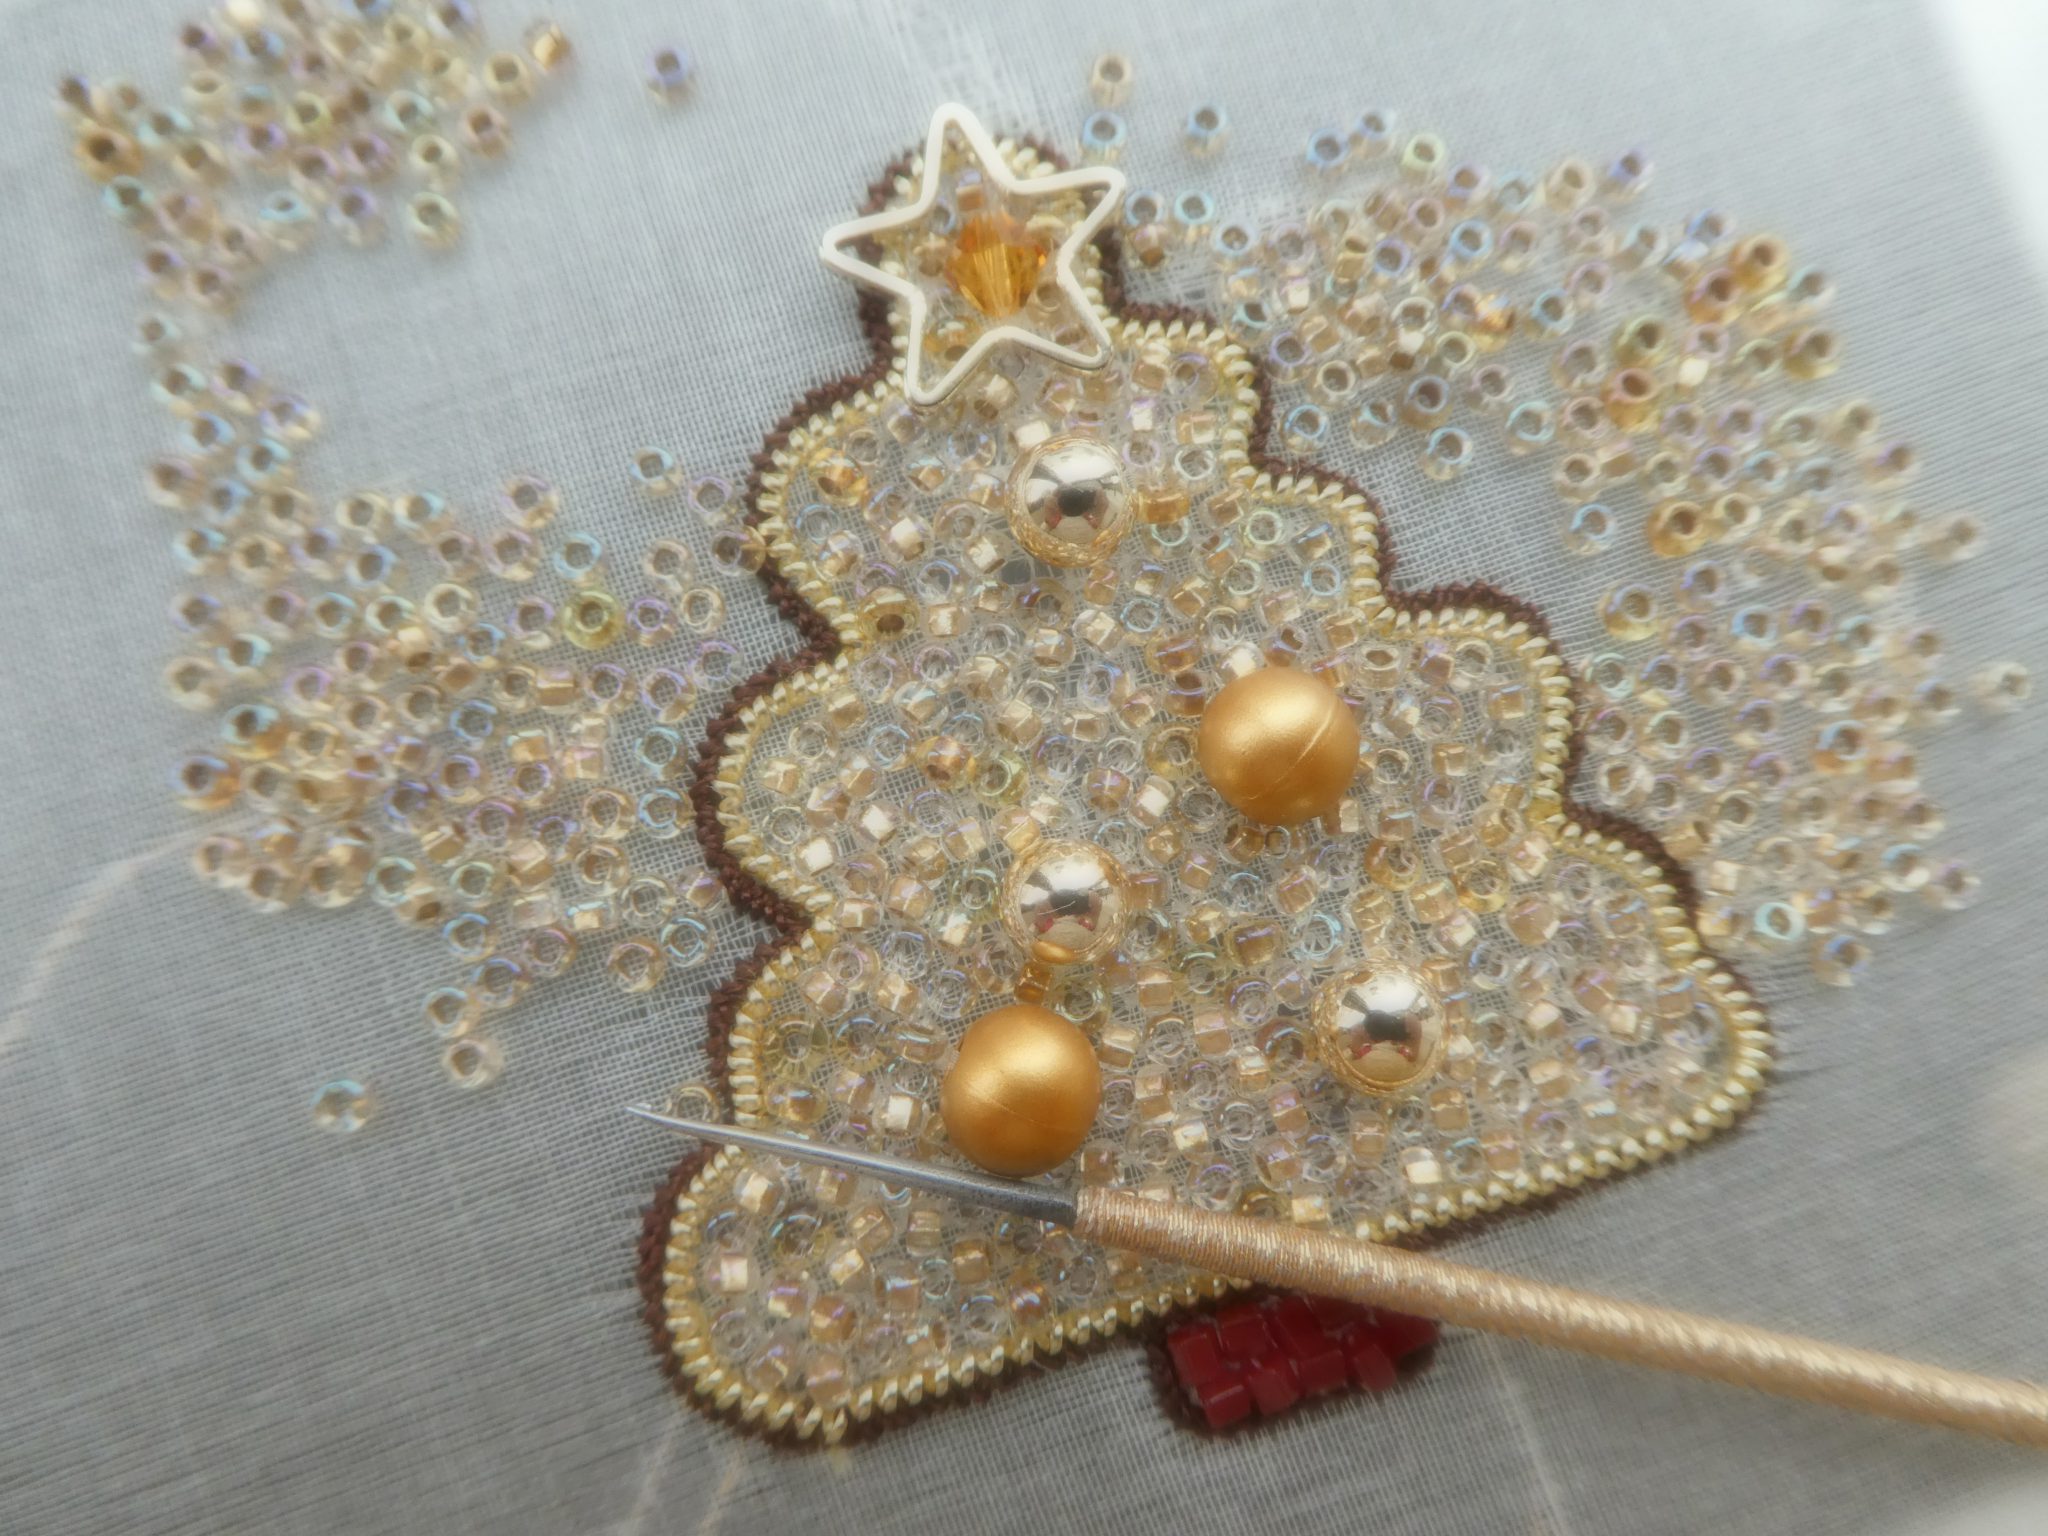 クリスマスツリー – Cocomorビーズ刺繍教室 | ビーズ刺繍とオートクチュール-